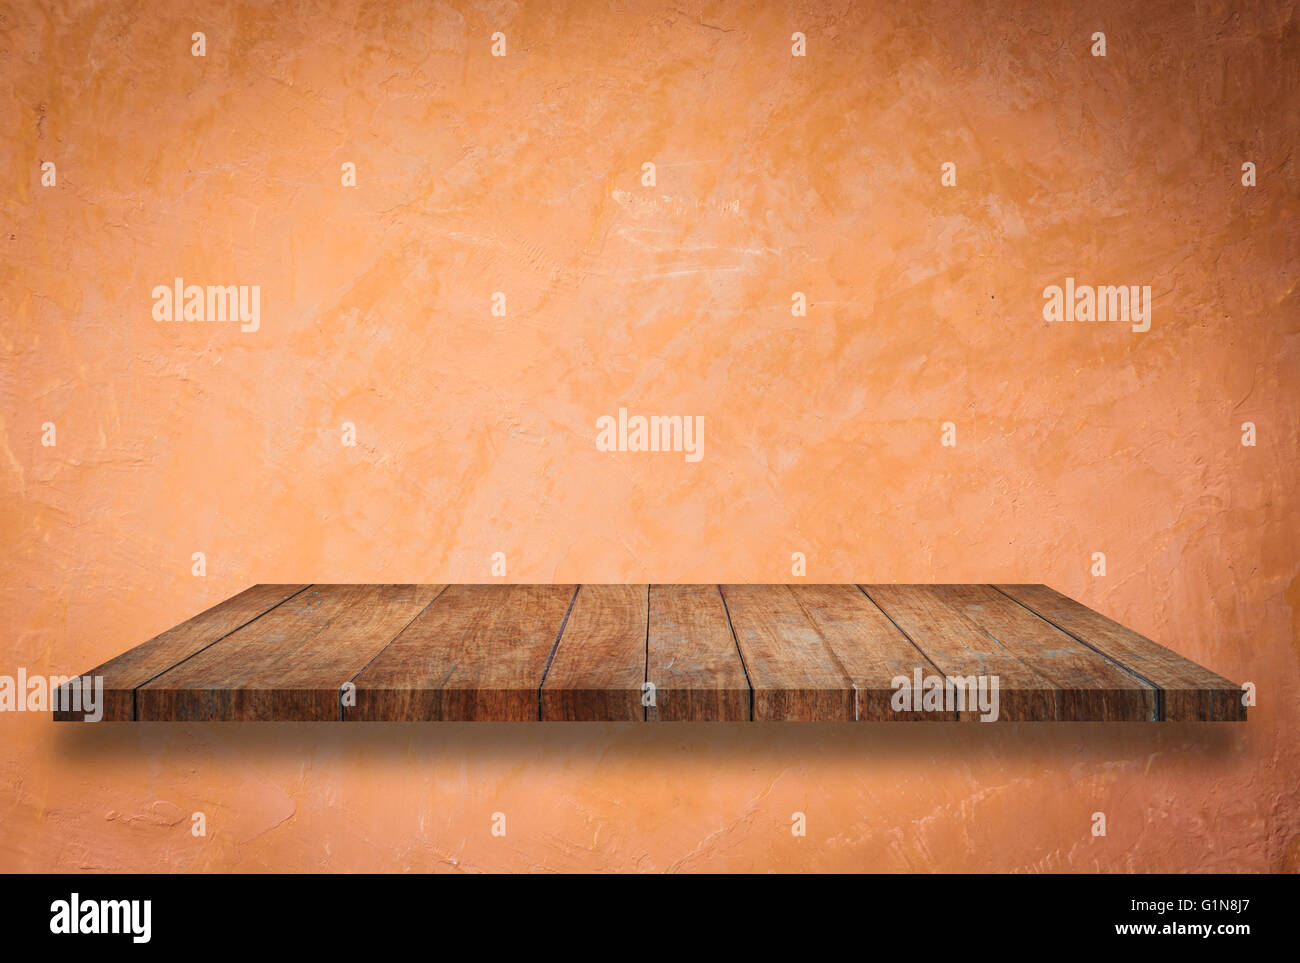 Perspectiva de vacío superior en estante de madera naranja fondo de pared Foto de stock